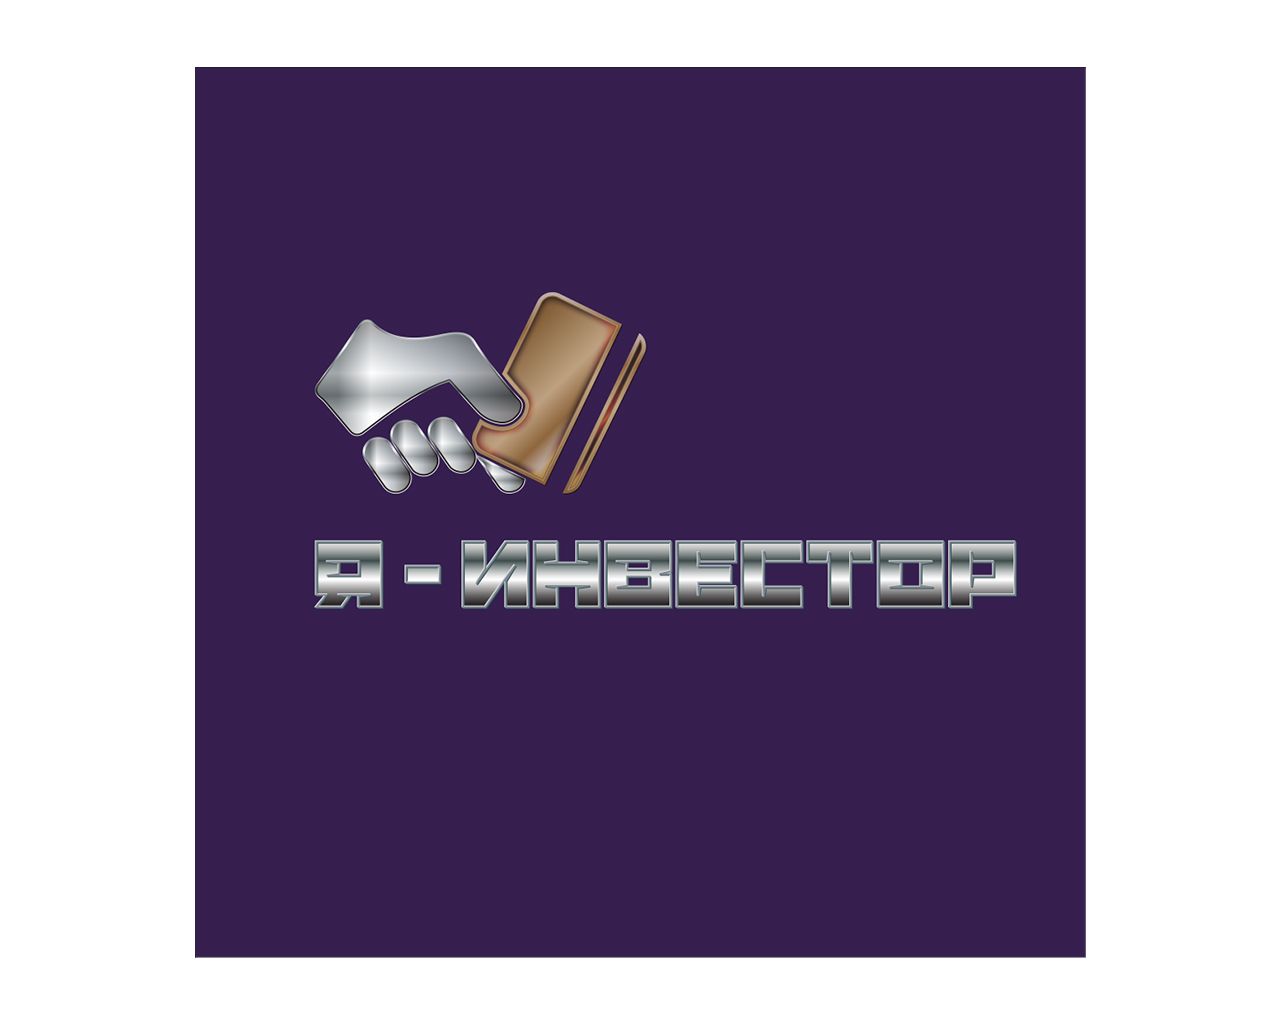 Логотип для обучающих вебинаров 